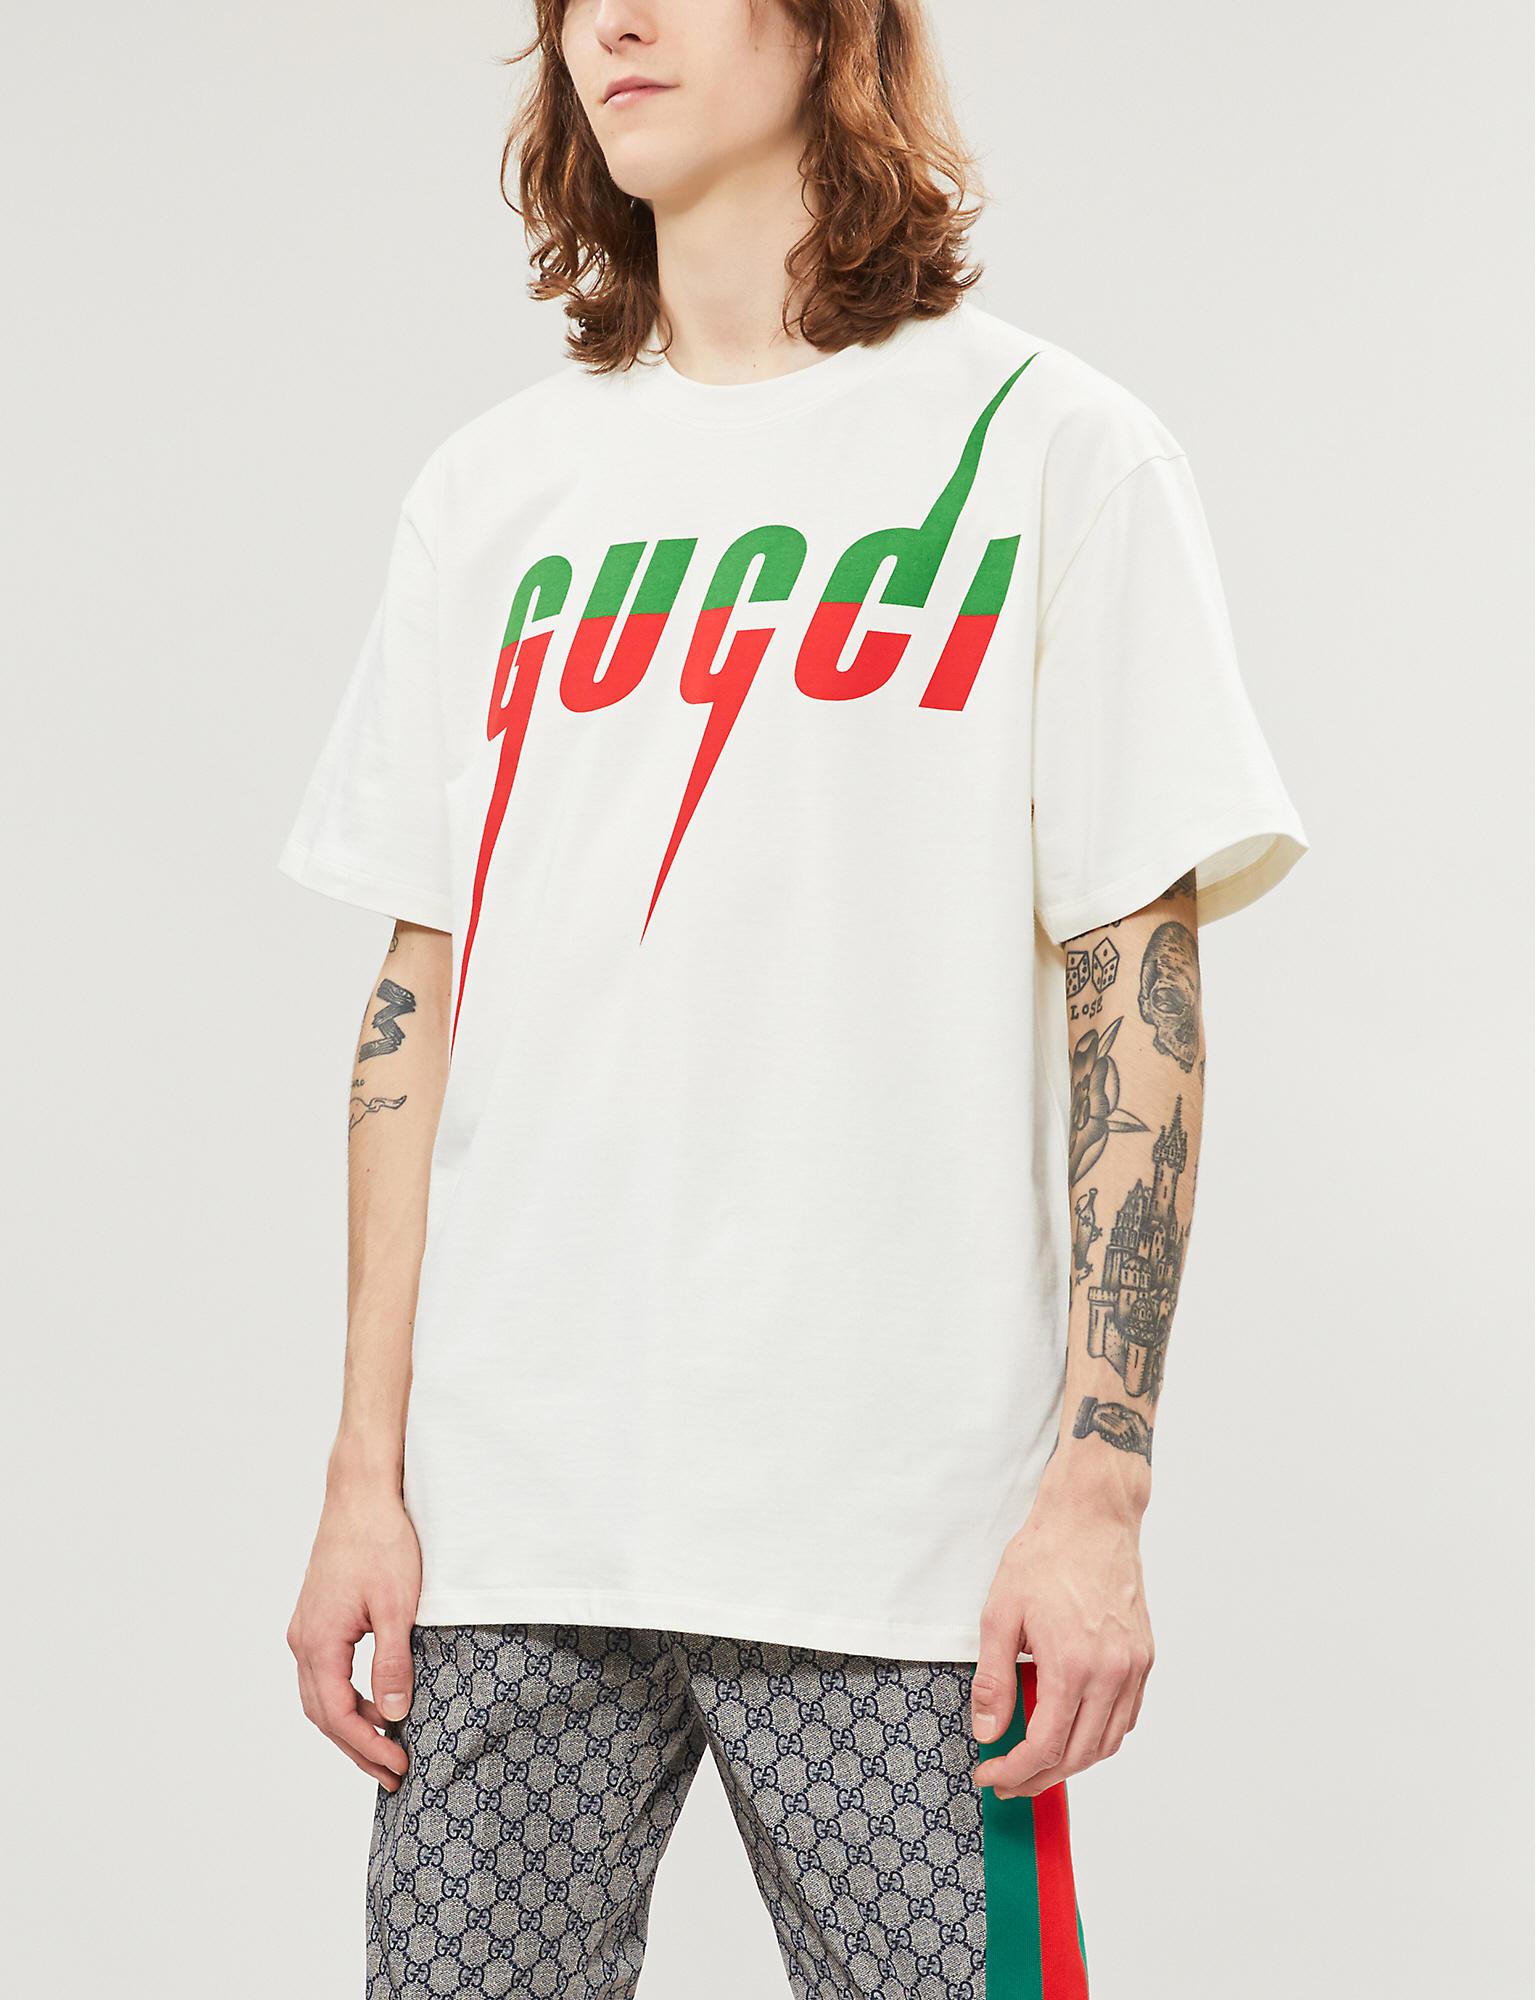 gucci tshirt